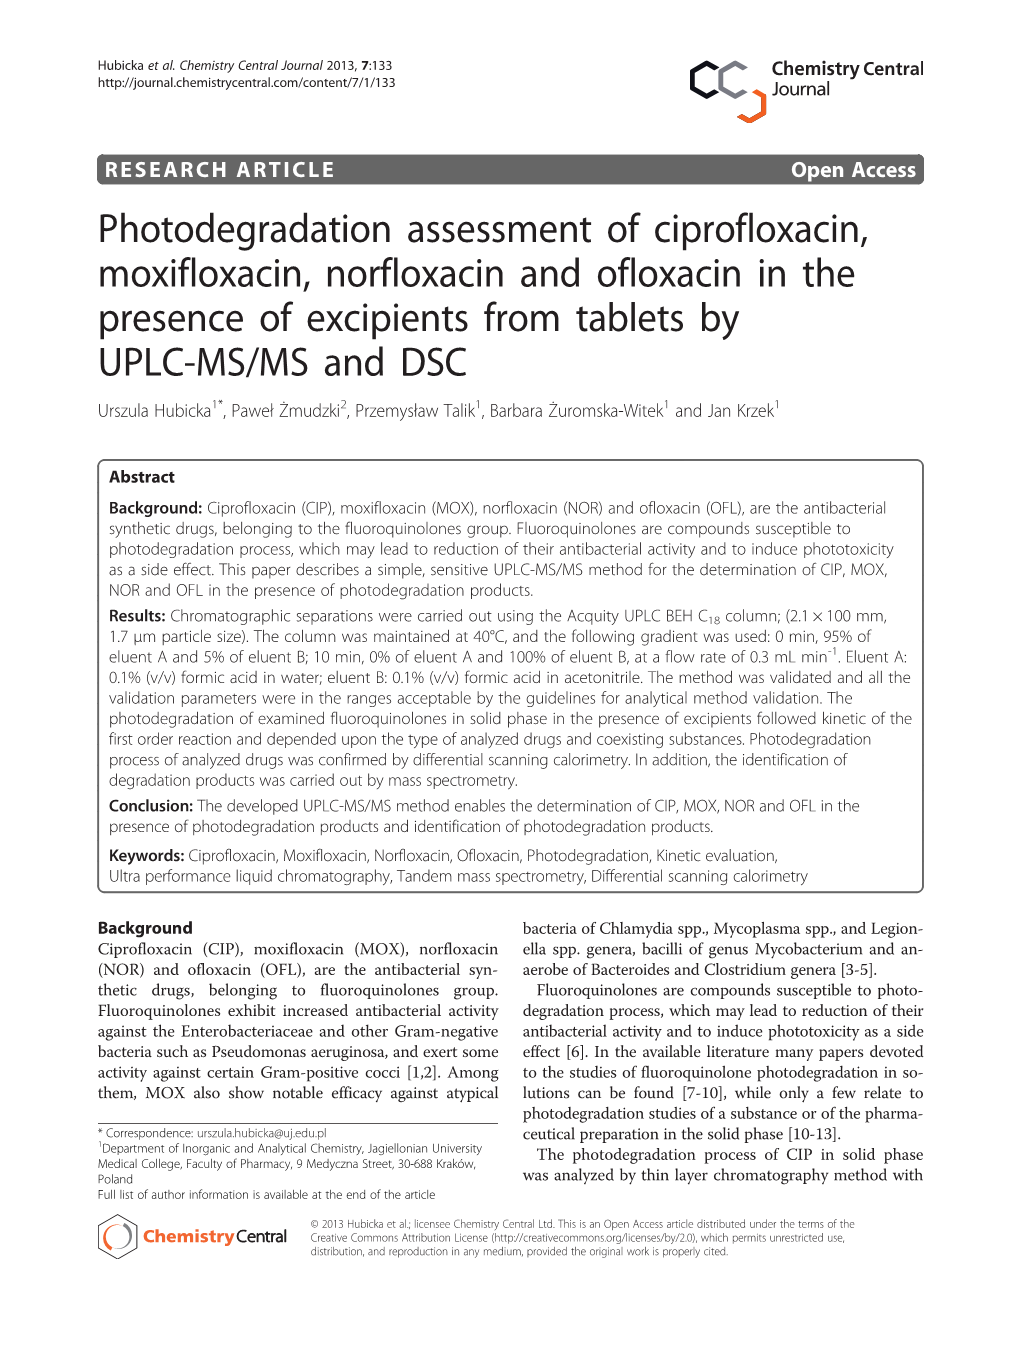 Photodegradation Assessment of Ciprofloxacin, Moxifloxacin